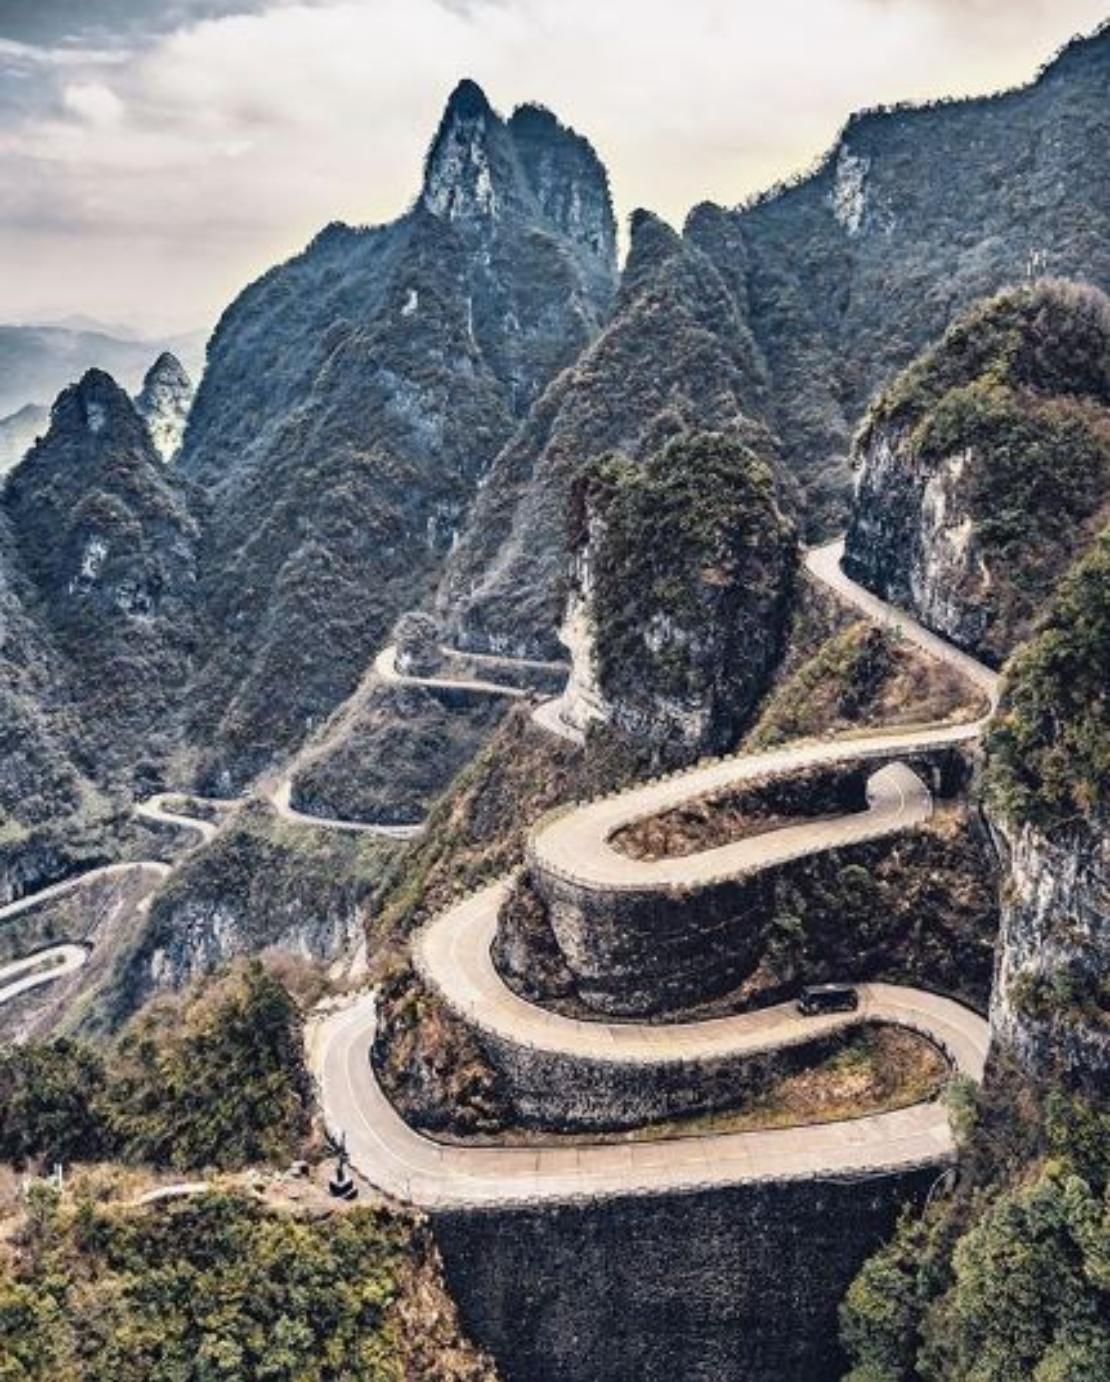 The famous 99 bends at Tianmen Mountain National Park, Zhangjiajie